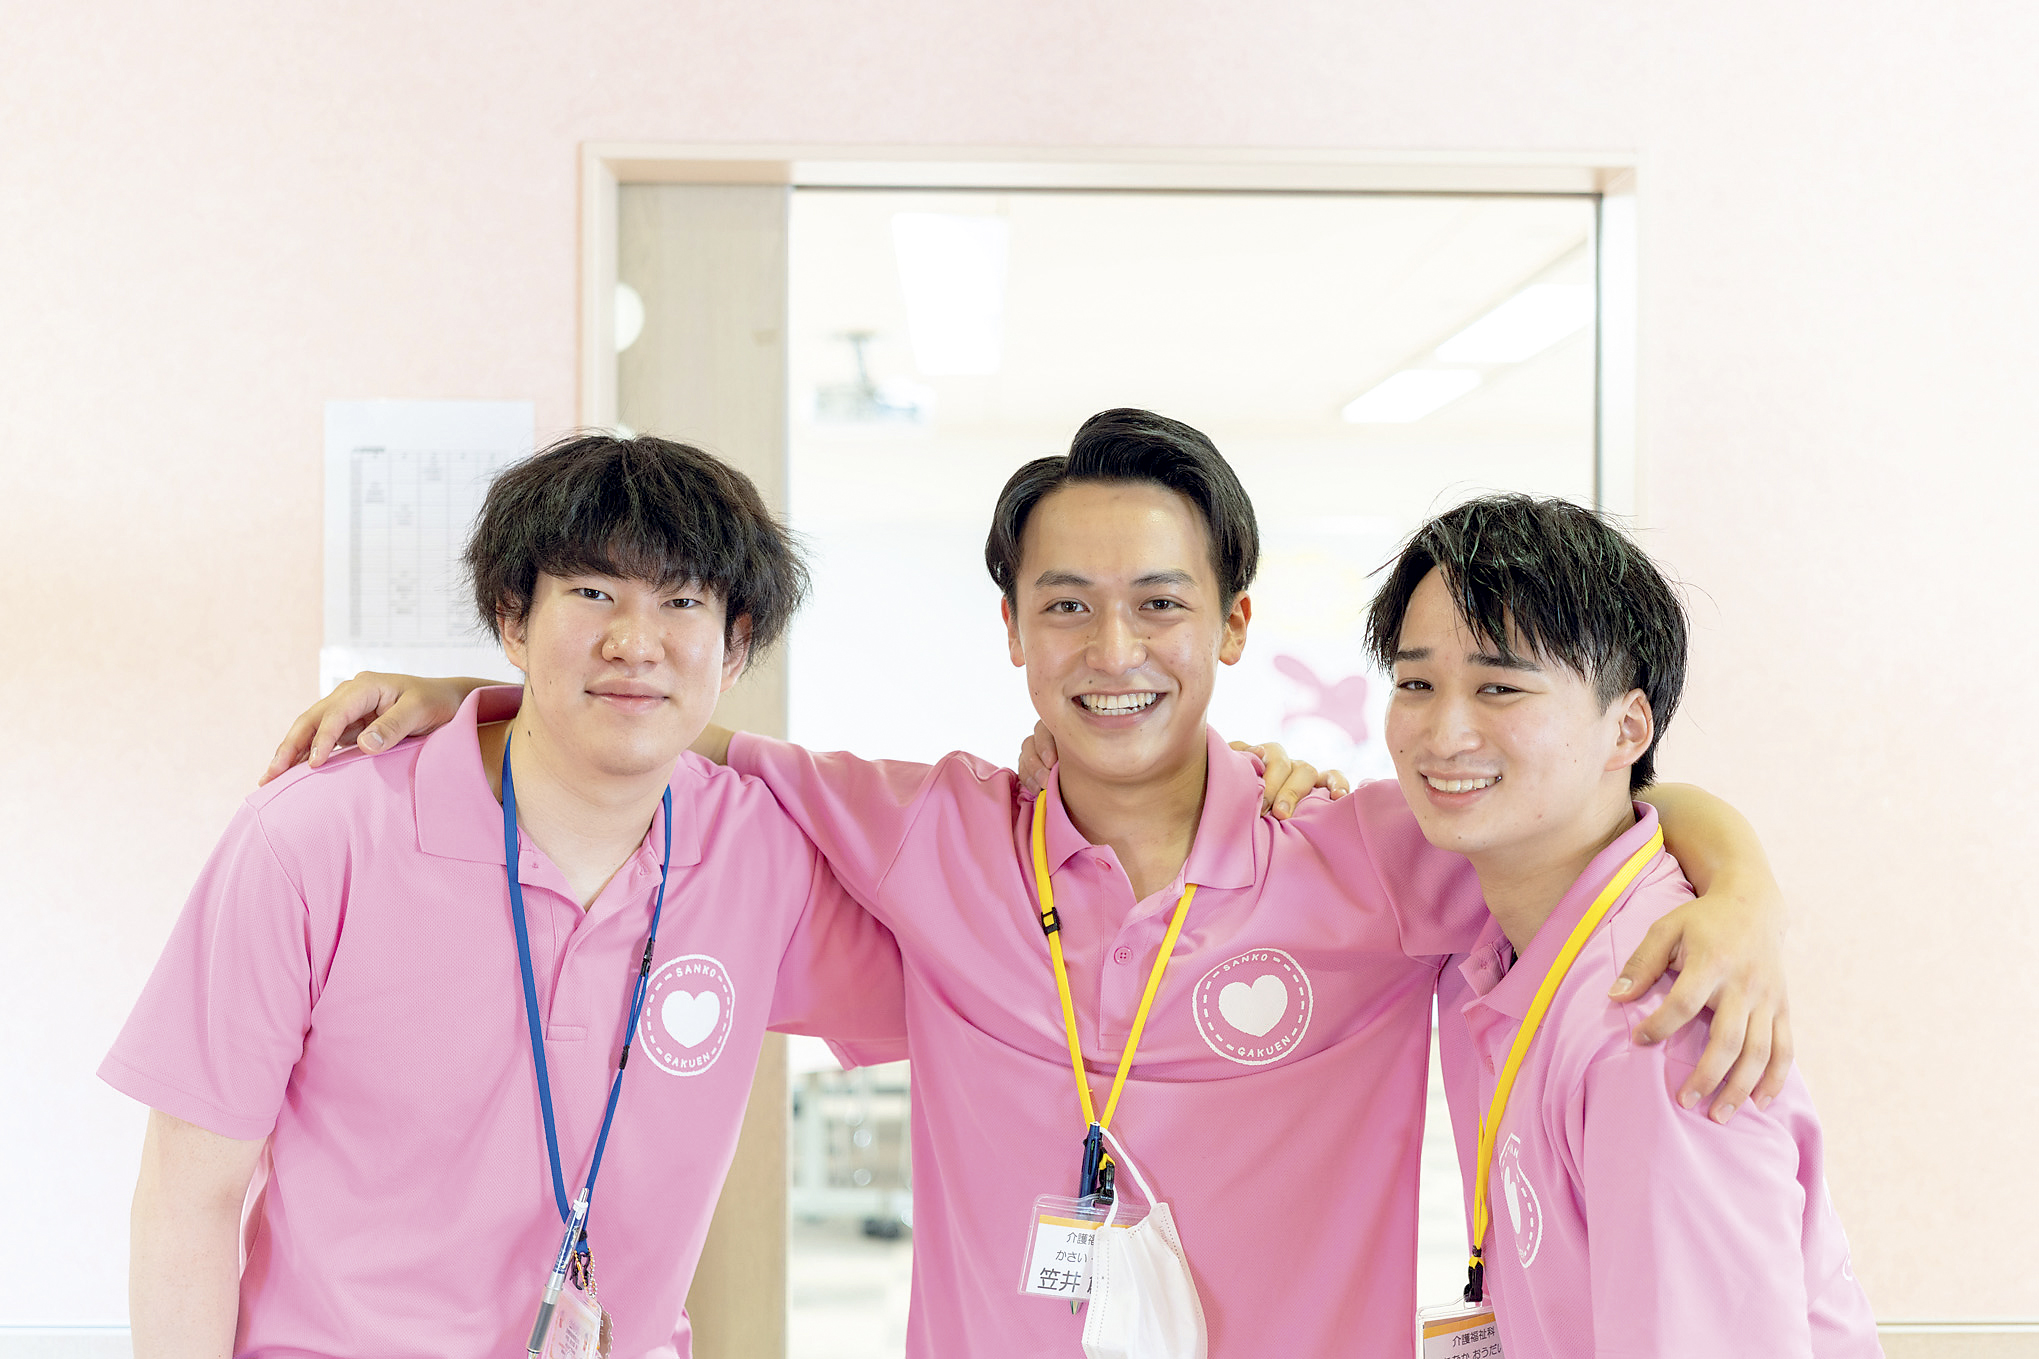 仙台医療秘書福祉＆IT専門学校 8月のオープンキャンパス・イベント情報